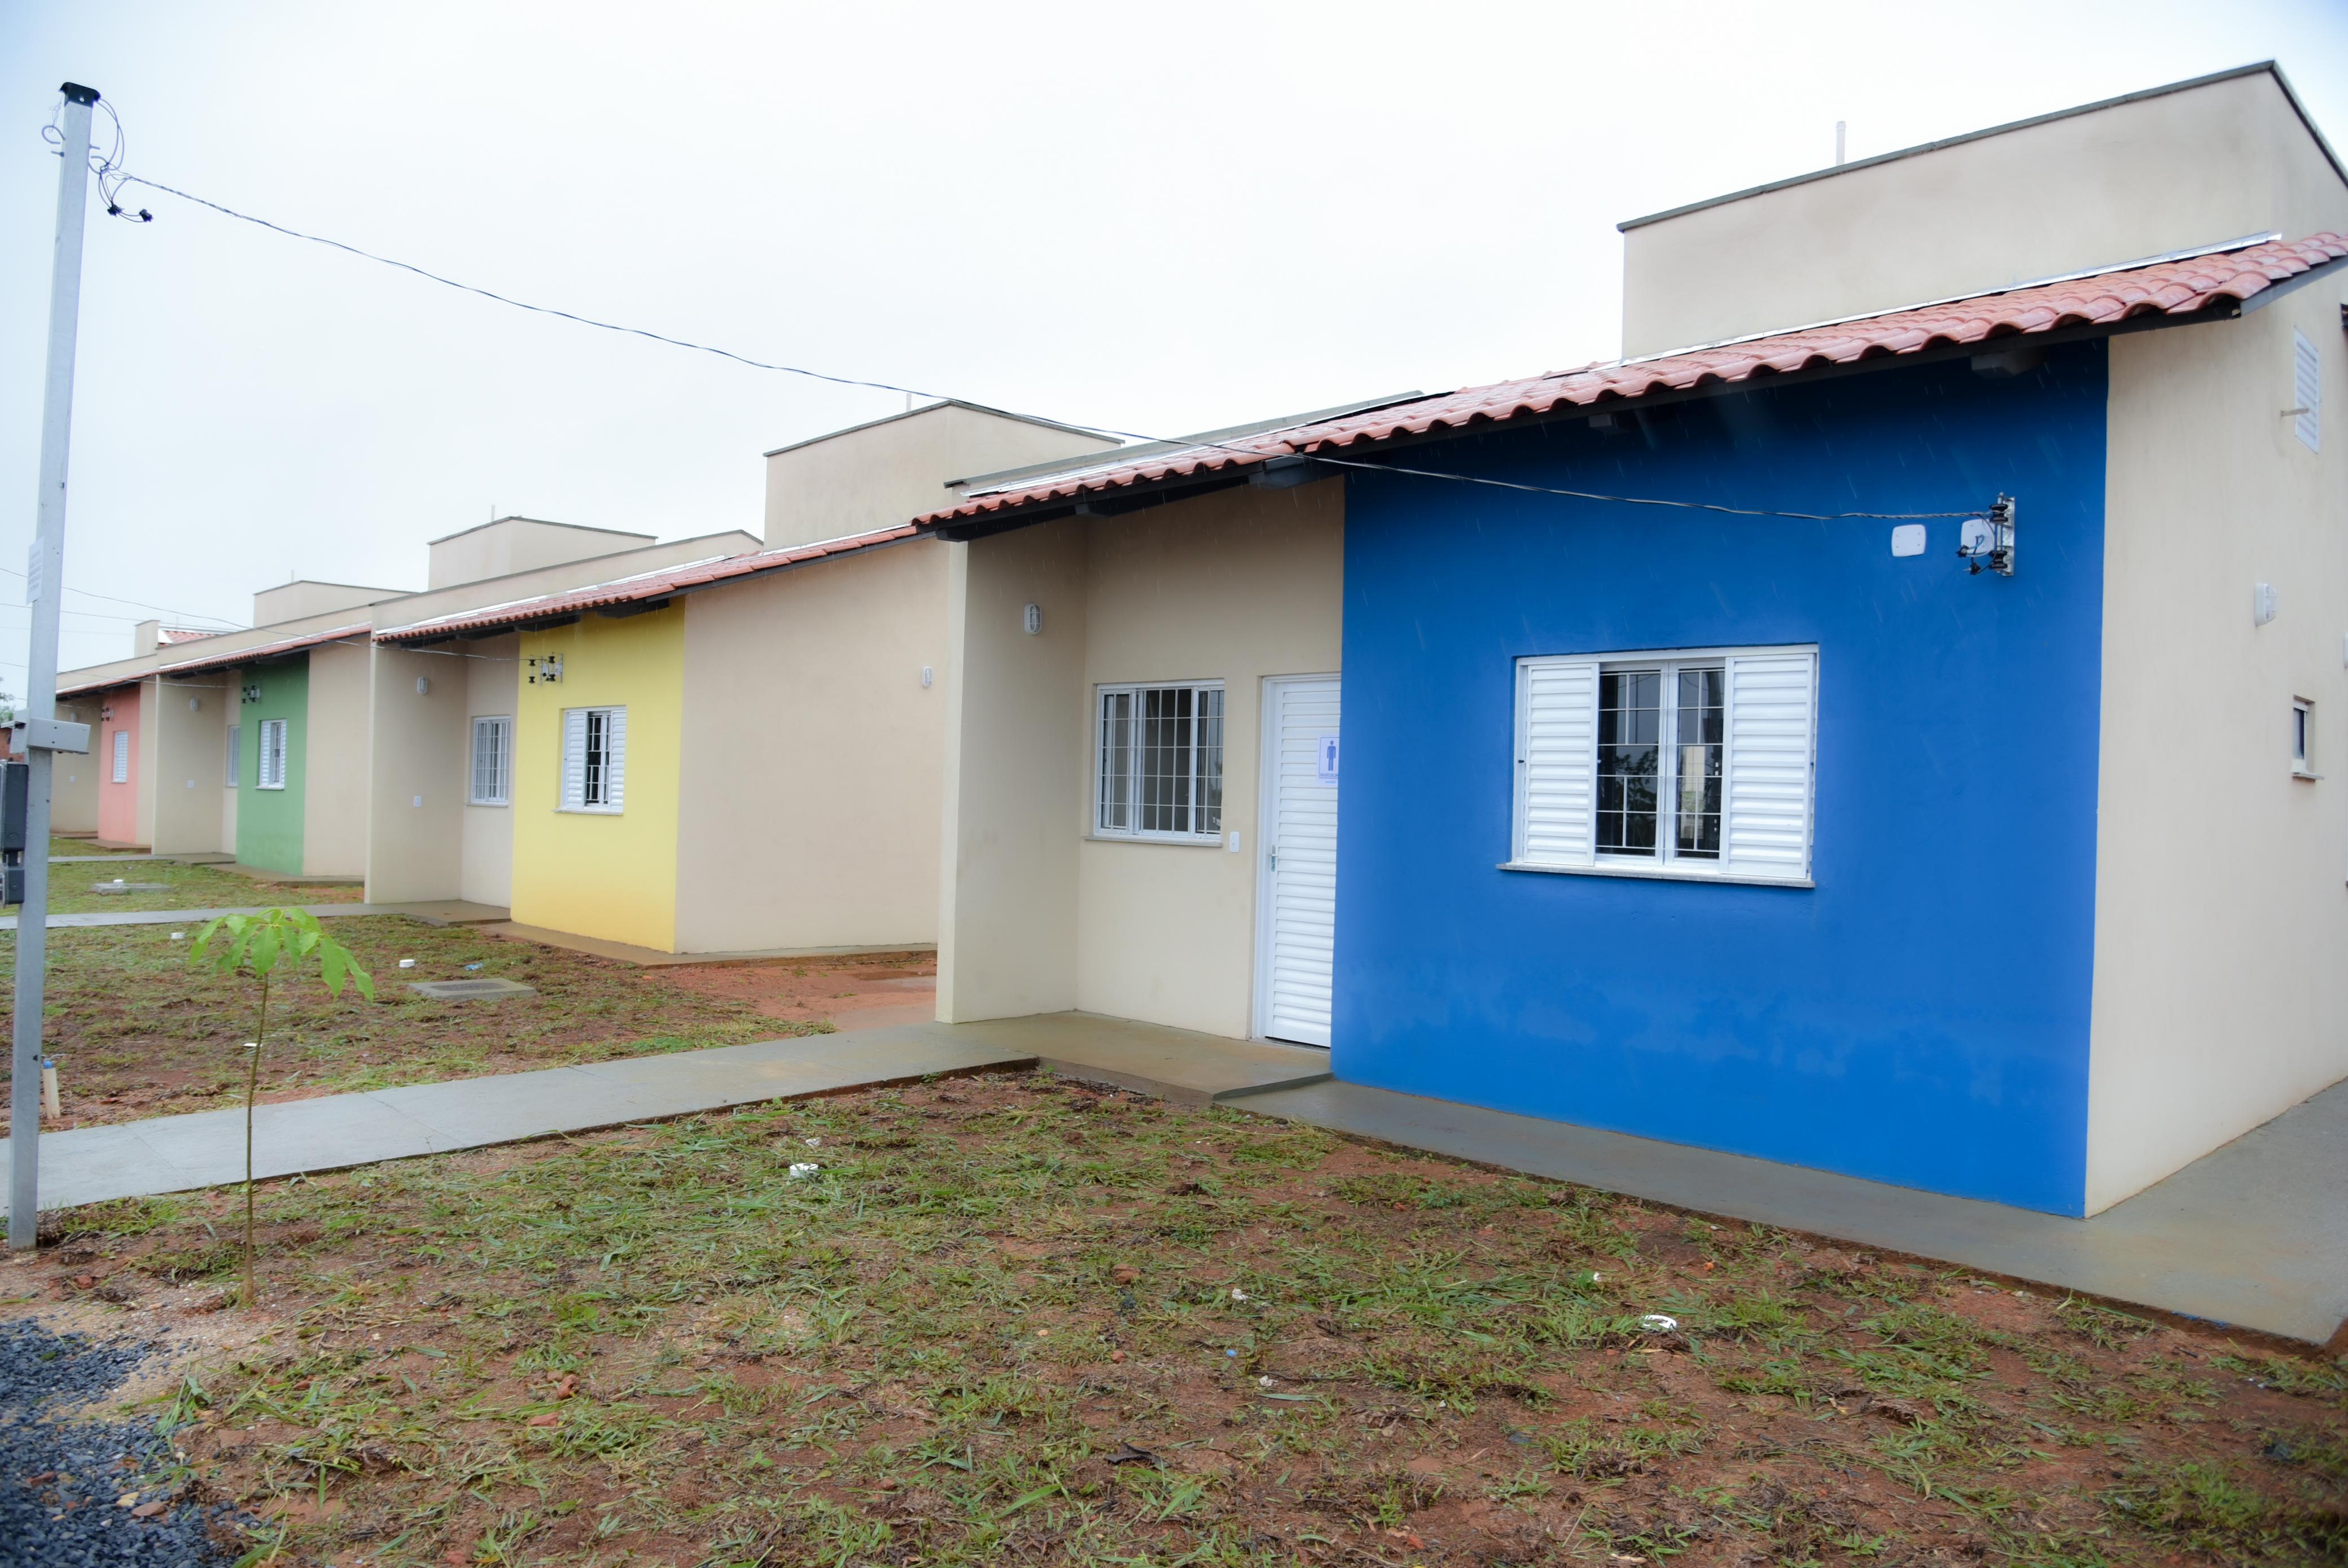 Divulgadas listas de famílias habilitadas a casas a custo zero em 18 municípios